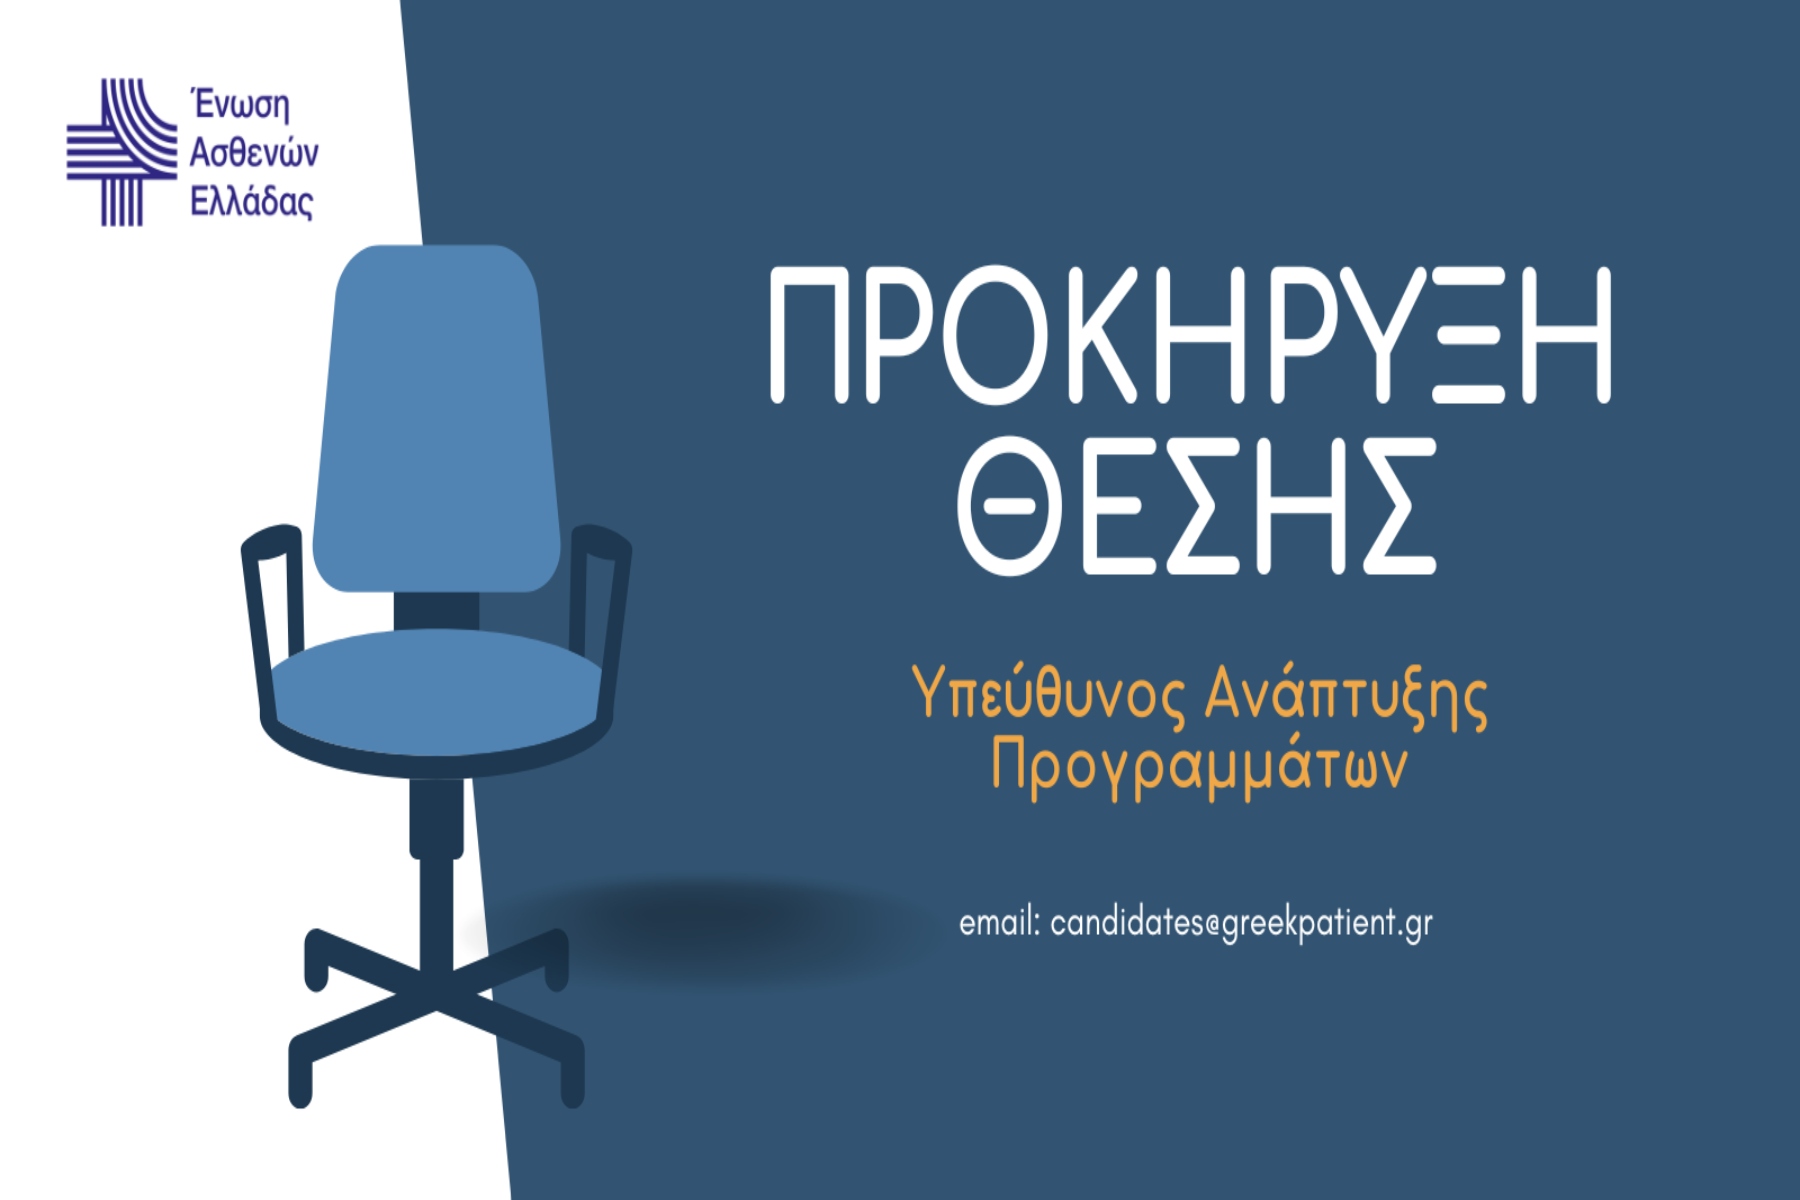 Ένωση Ασθενών Ελλάδας: Προκήρυξη Θέσης Υπεύθυνου Ανάπτυξης Προγραμμάτων